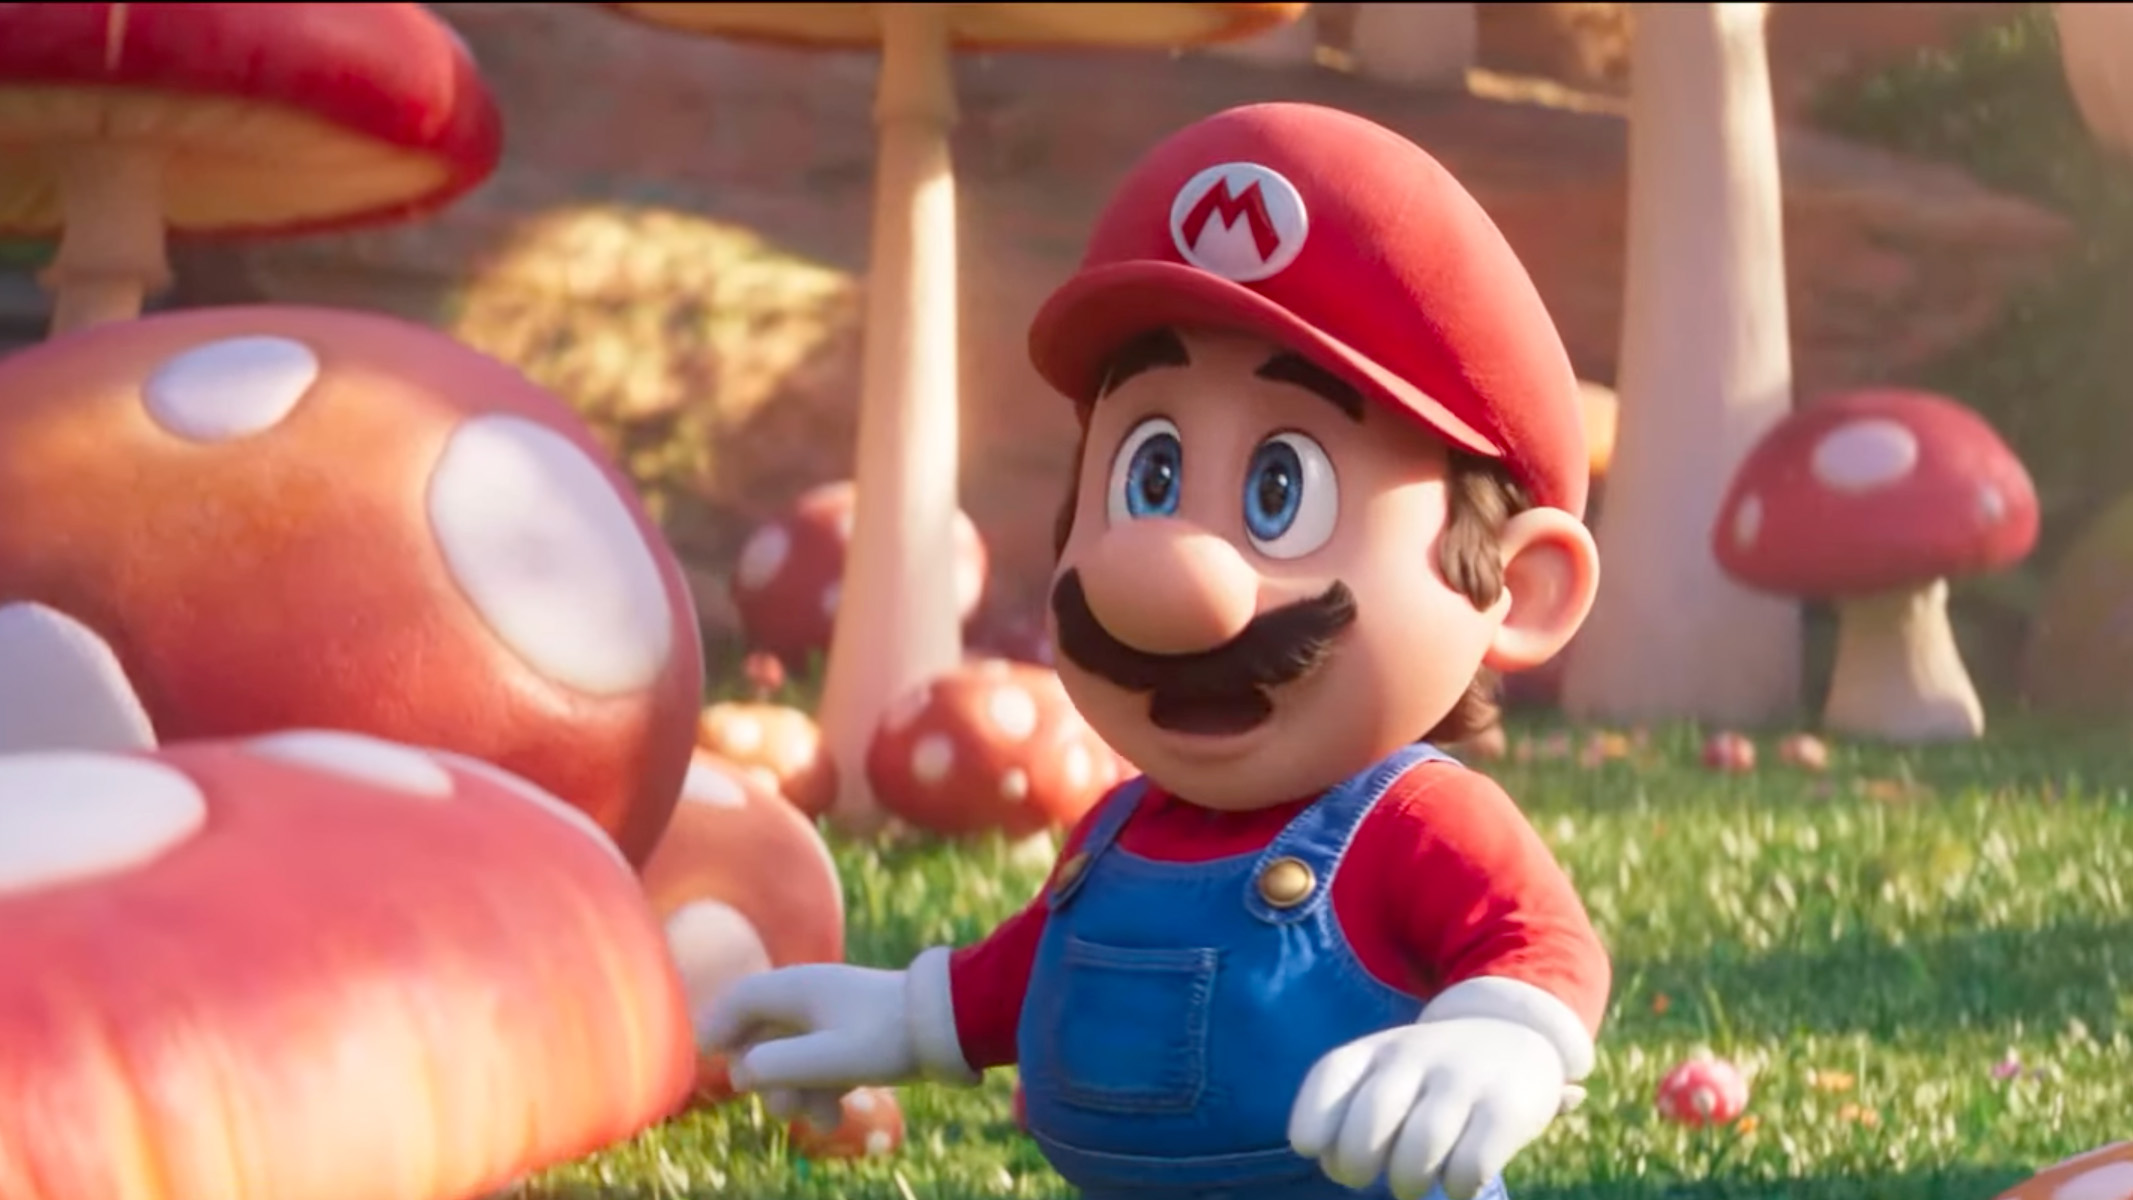 Mario (exprimé par Chris Pratt) dans le film Super Mario, entouré de champignons.